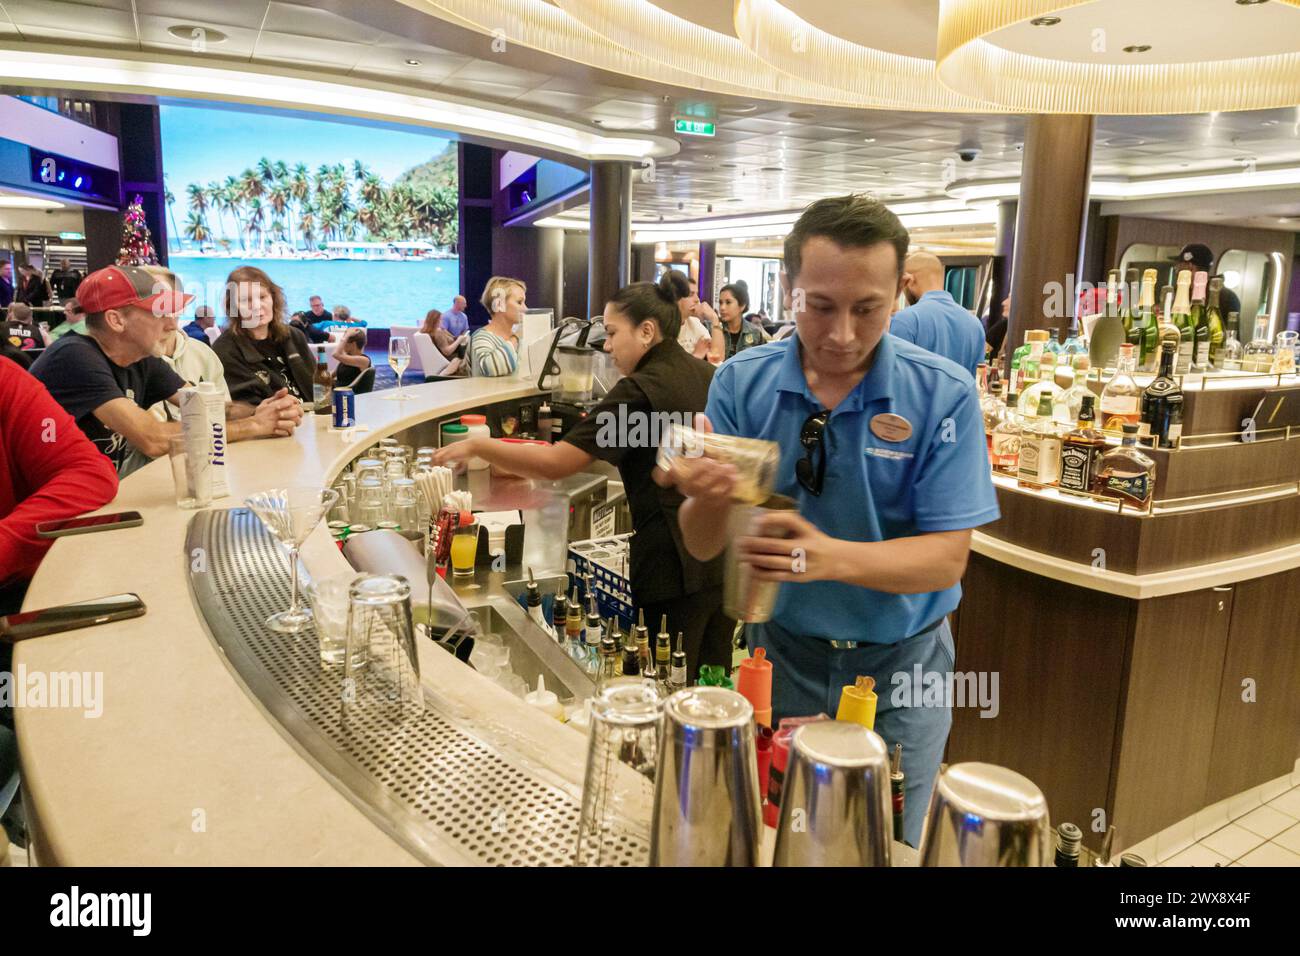 Miami Floride, PortMiami Port de Miami, à bord intérieur, navire Norwegian Joy Cruise Line, Caraïbes de 7 jours, homme barman asiatique, faire du mélange d'alcool Banque D'Images